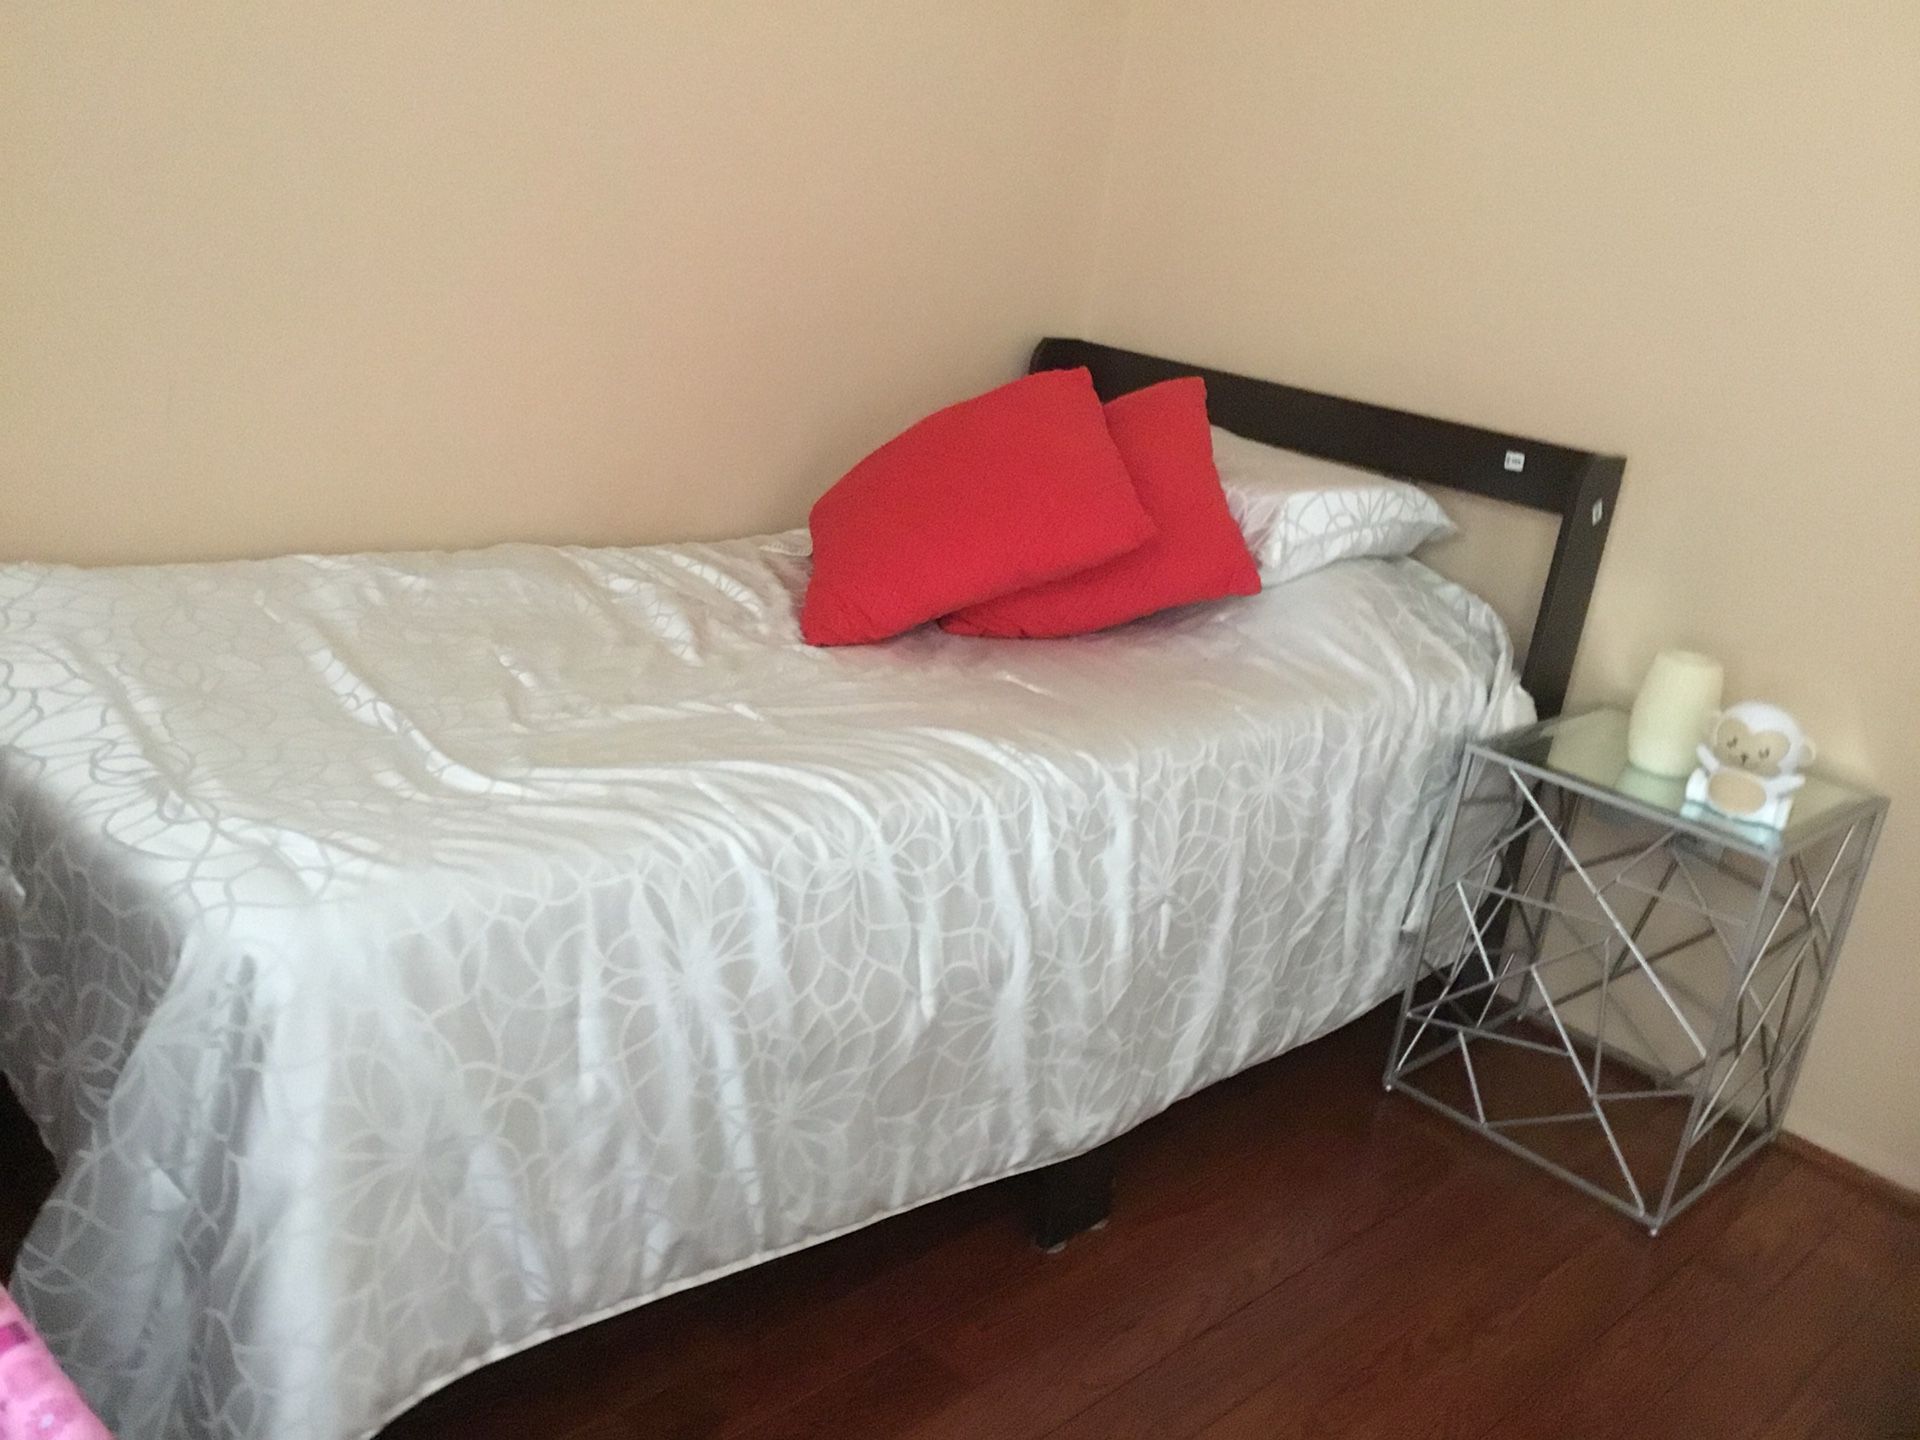 Twin bed set (frame, mattress, pillow, comforter)